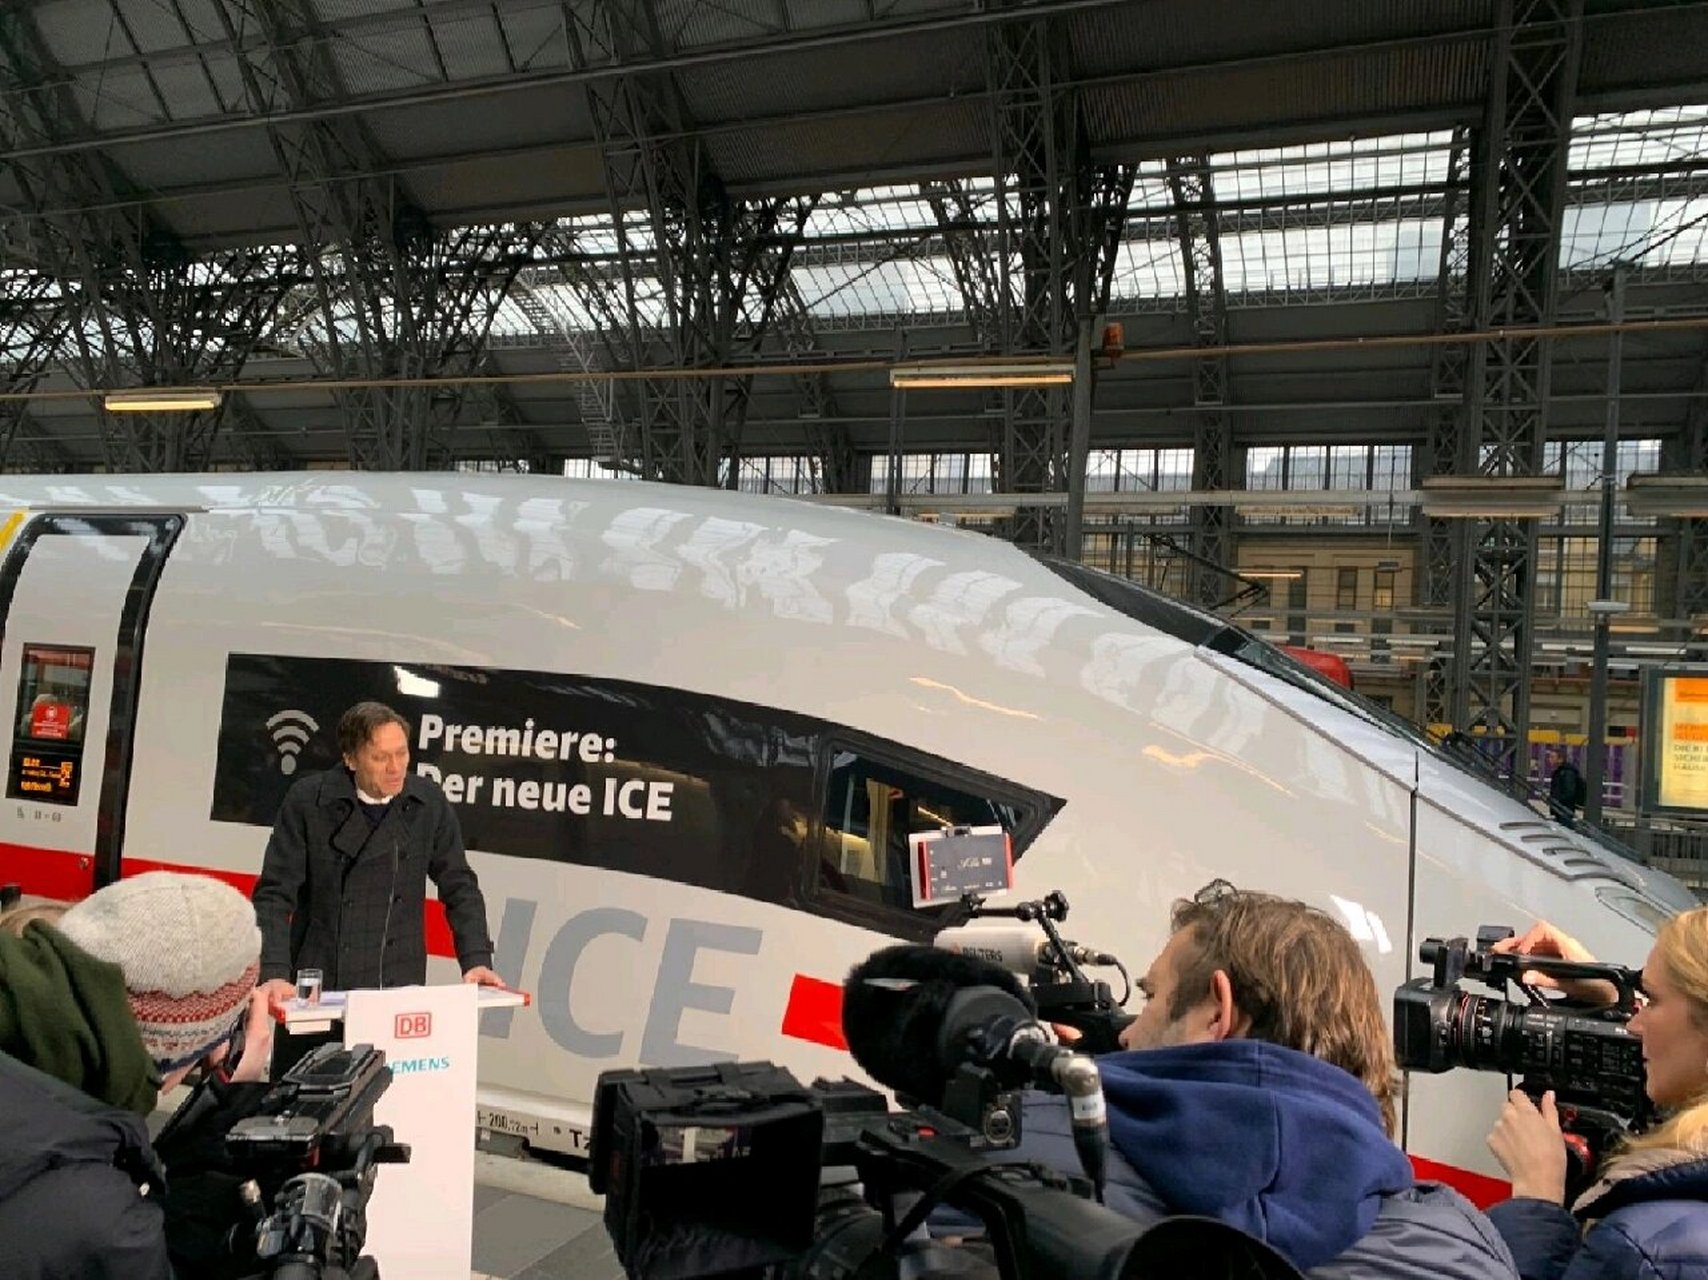 德铁db发布新一代ice 3neo 本周西门子公司交付新一代德国高铁车辆ice